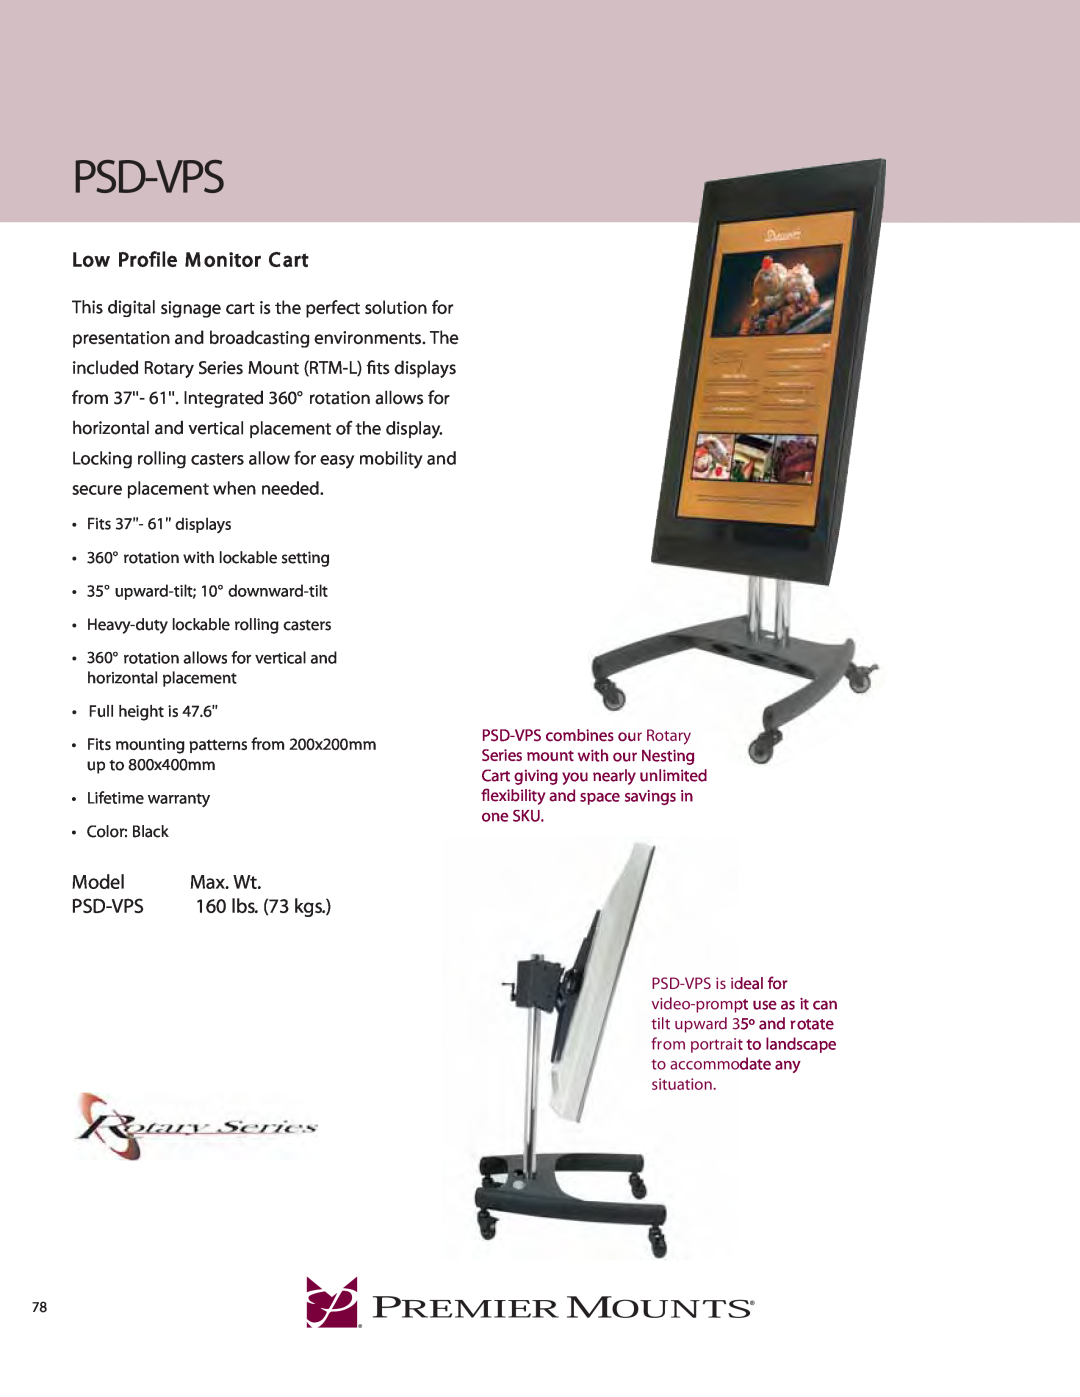 Premier Mounts PSD-VPS warranty Psd-Vps, Low Profile M onitor C art, Model, Max. Wt, 160 lbs. 73 kgs 